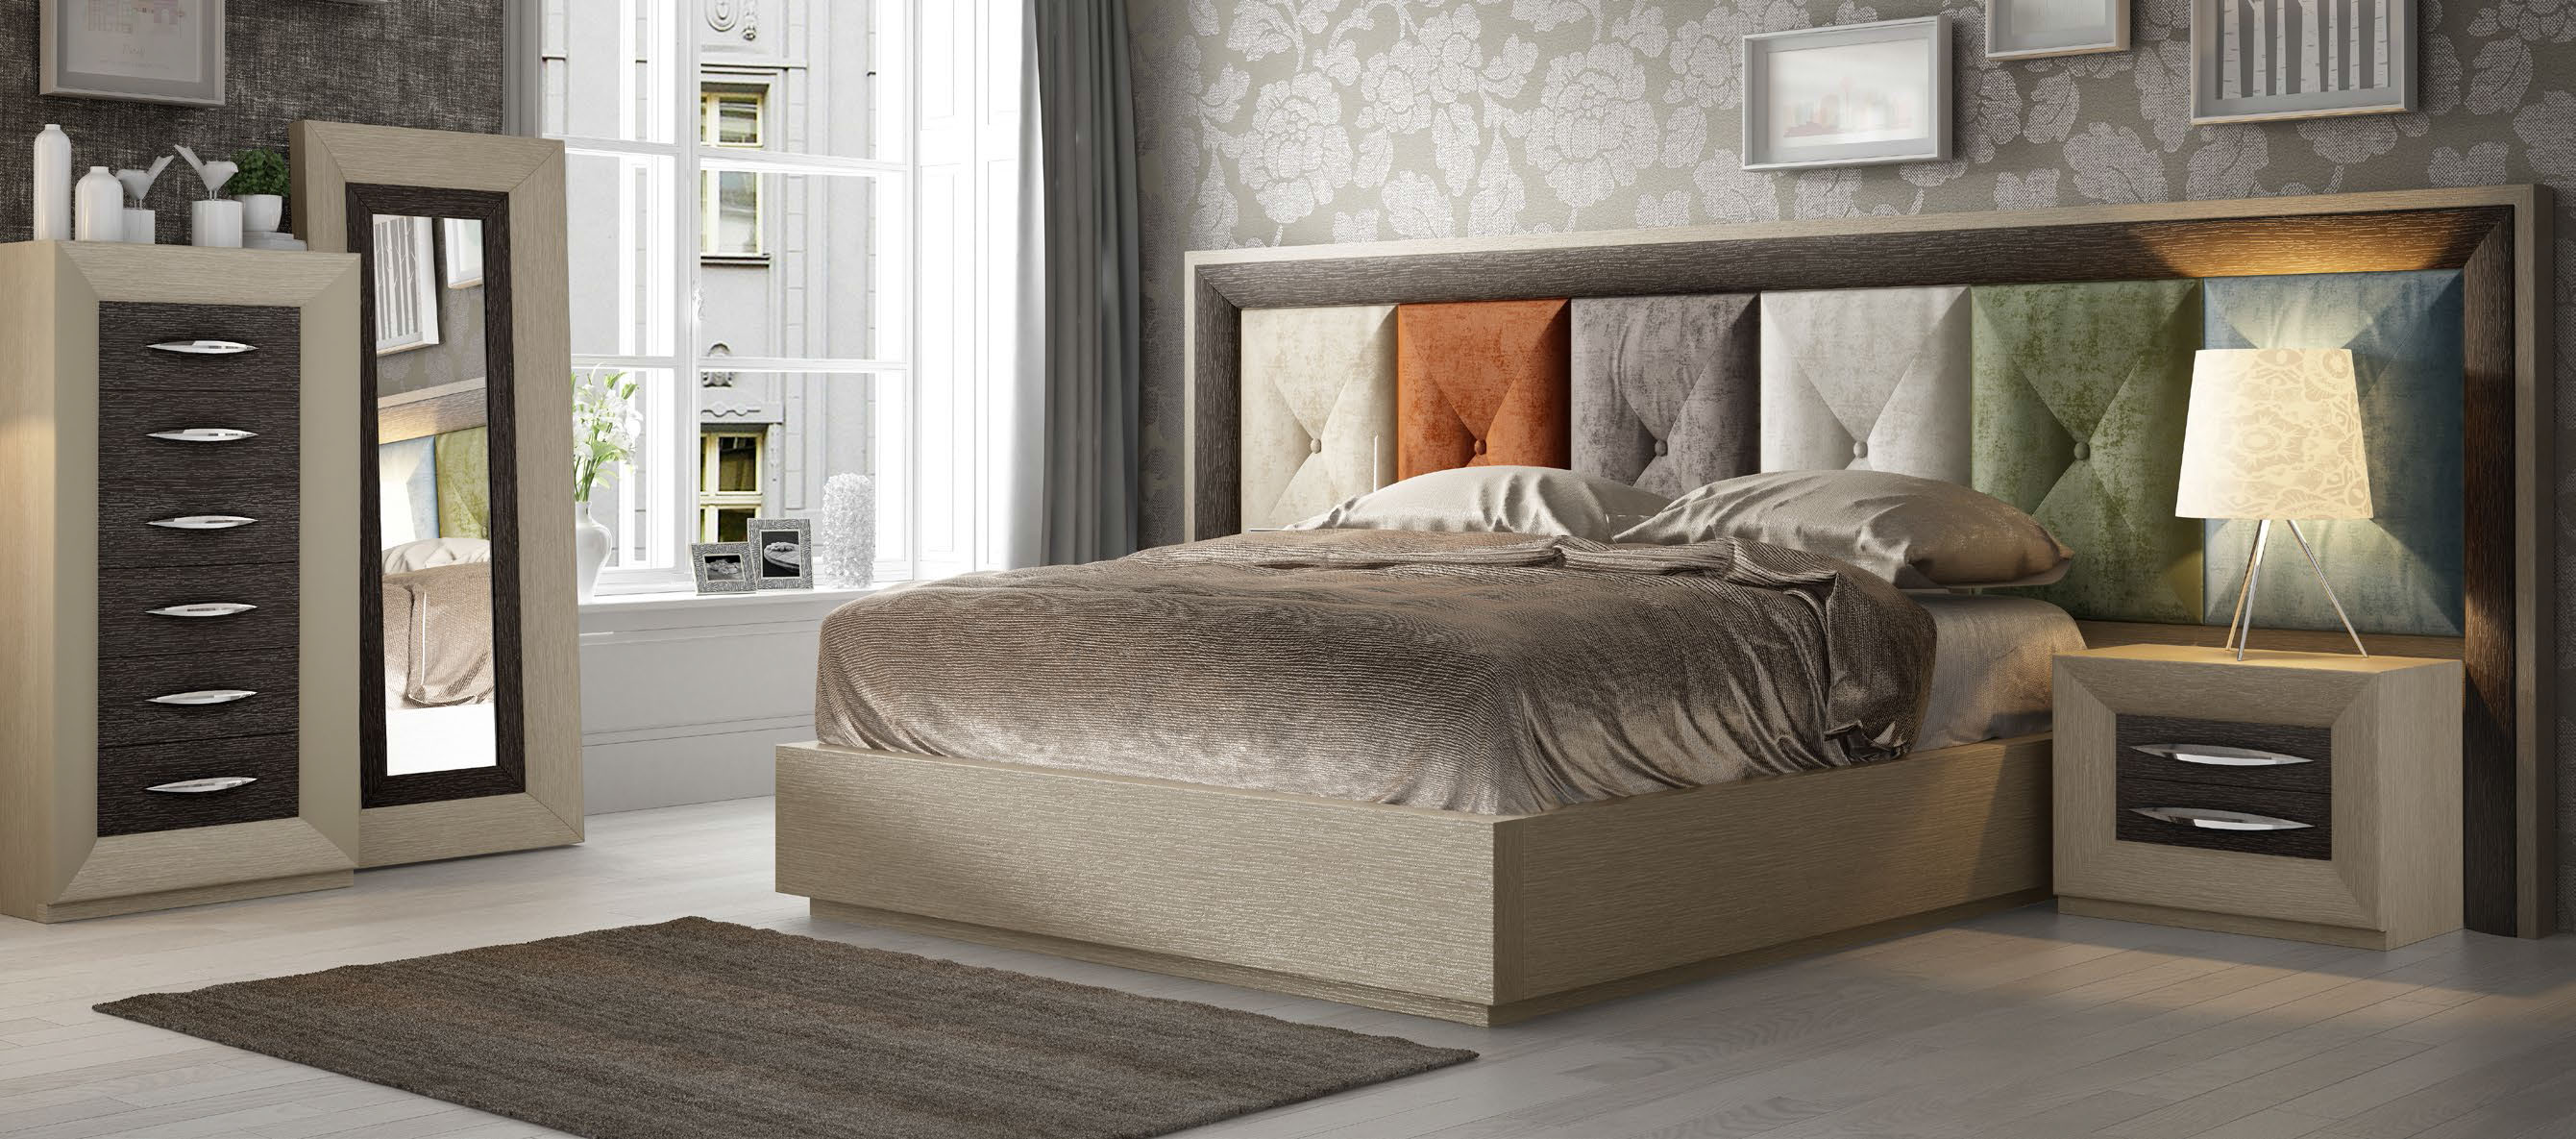 Brands Franco Furniture Avanty Bedrooms, Spain DOR 121